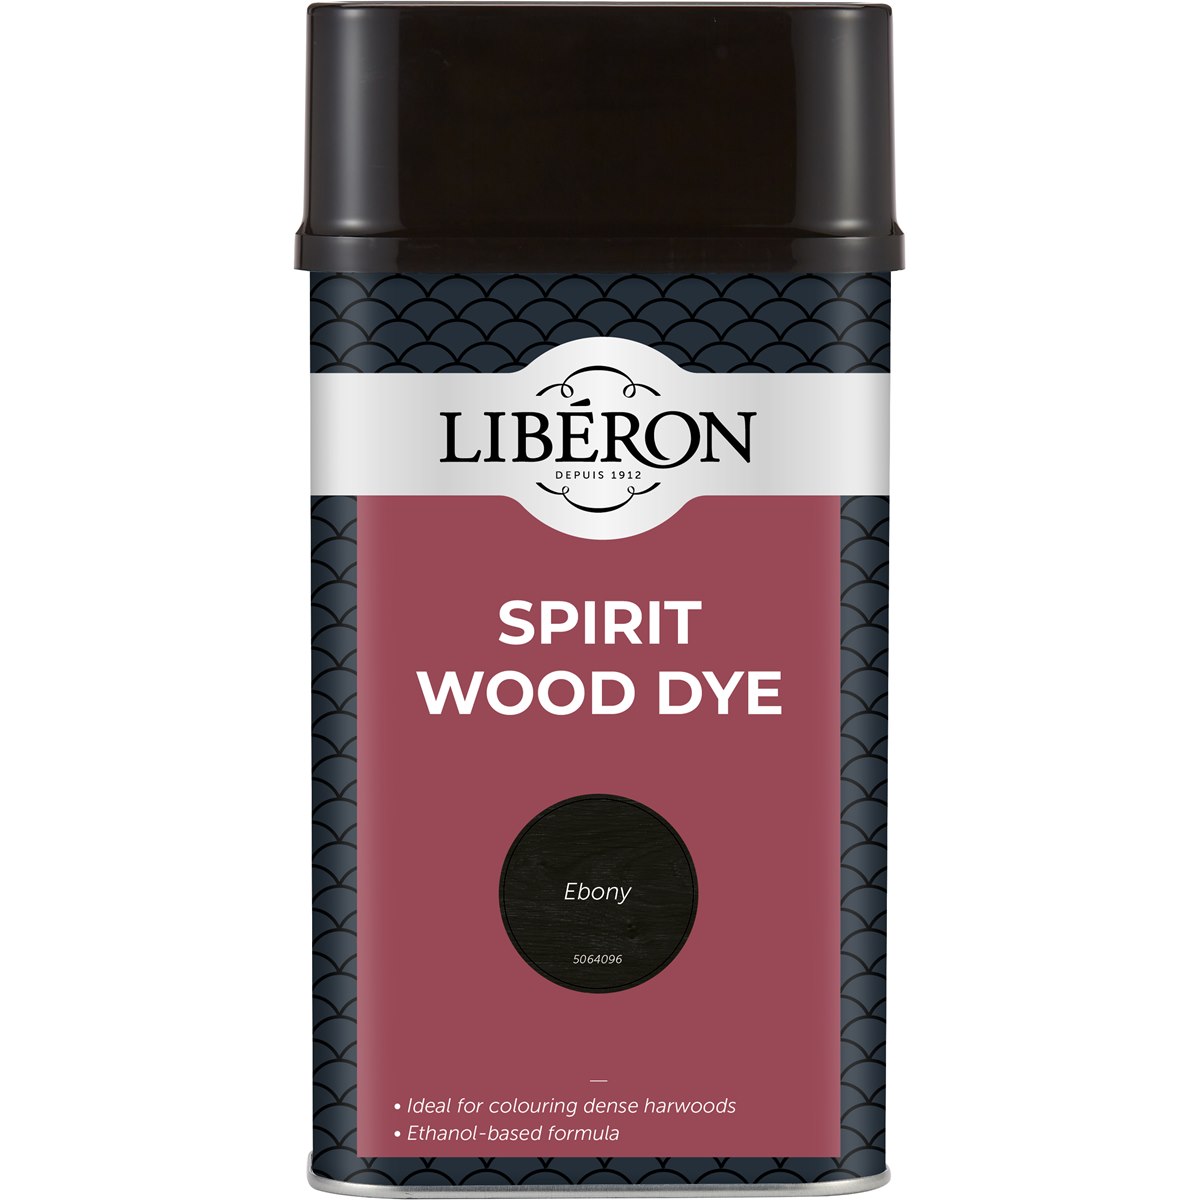 Liberon Spirit Wood Dye Ebony 1 Litre